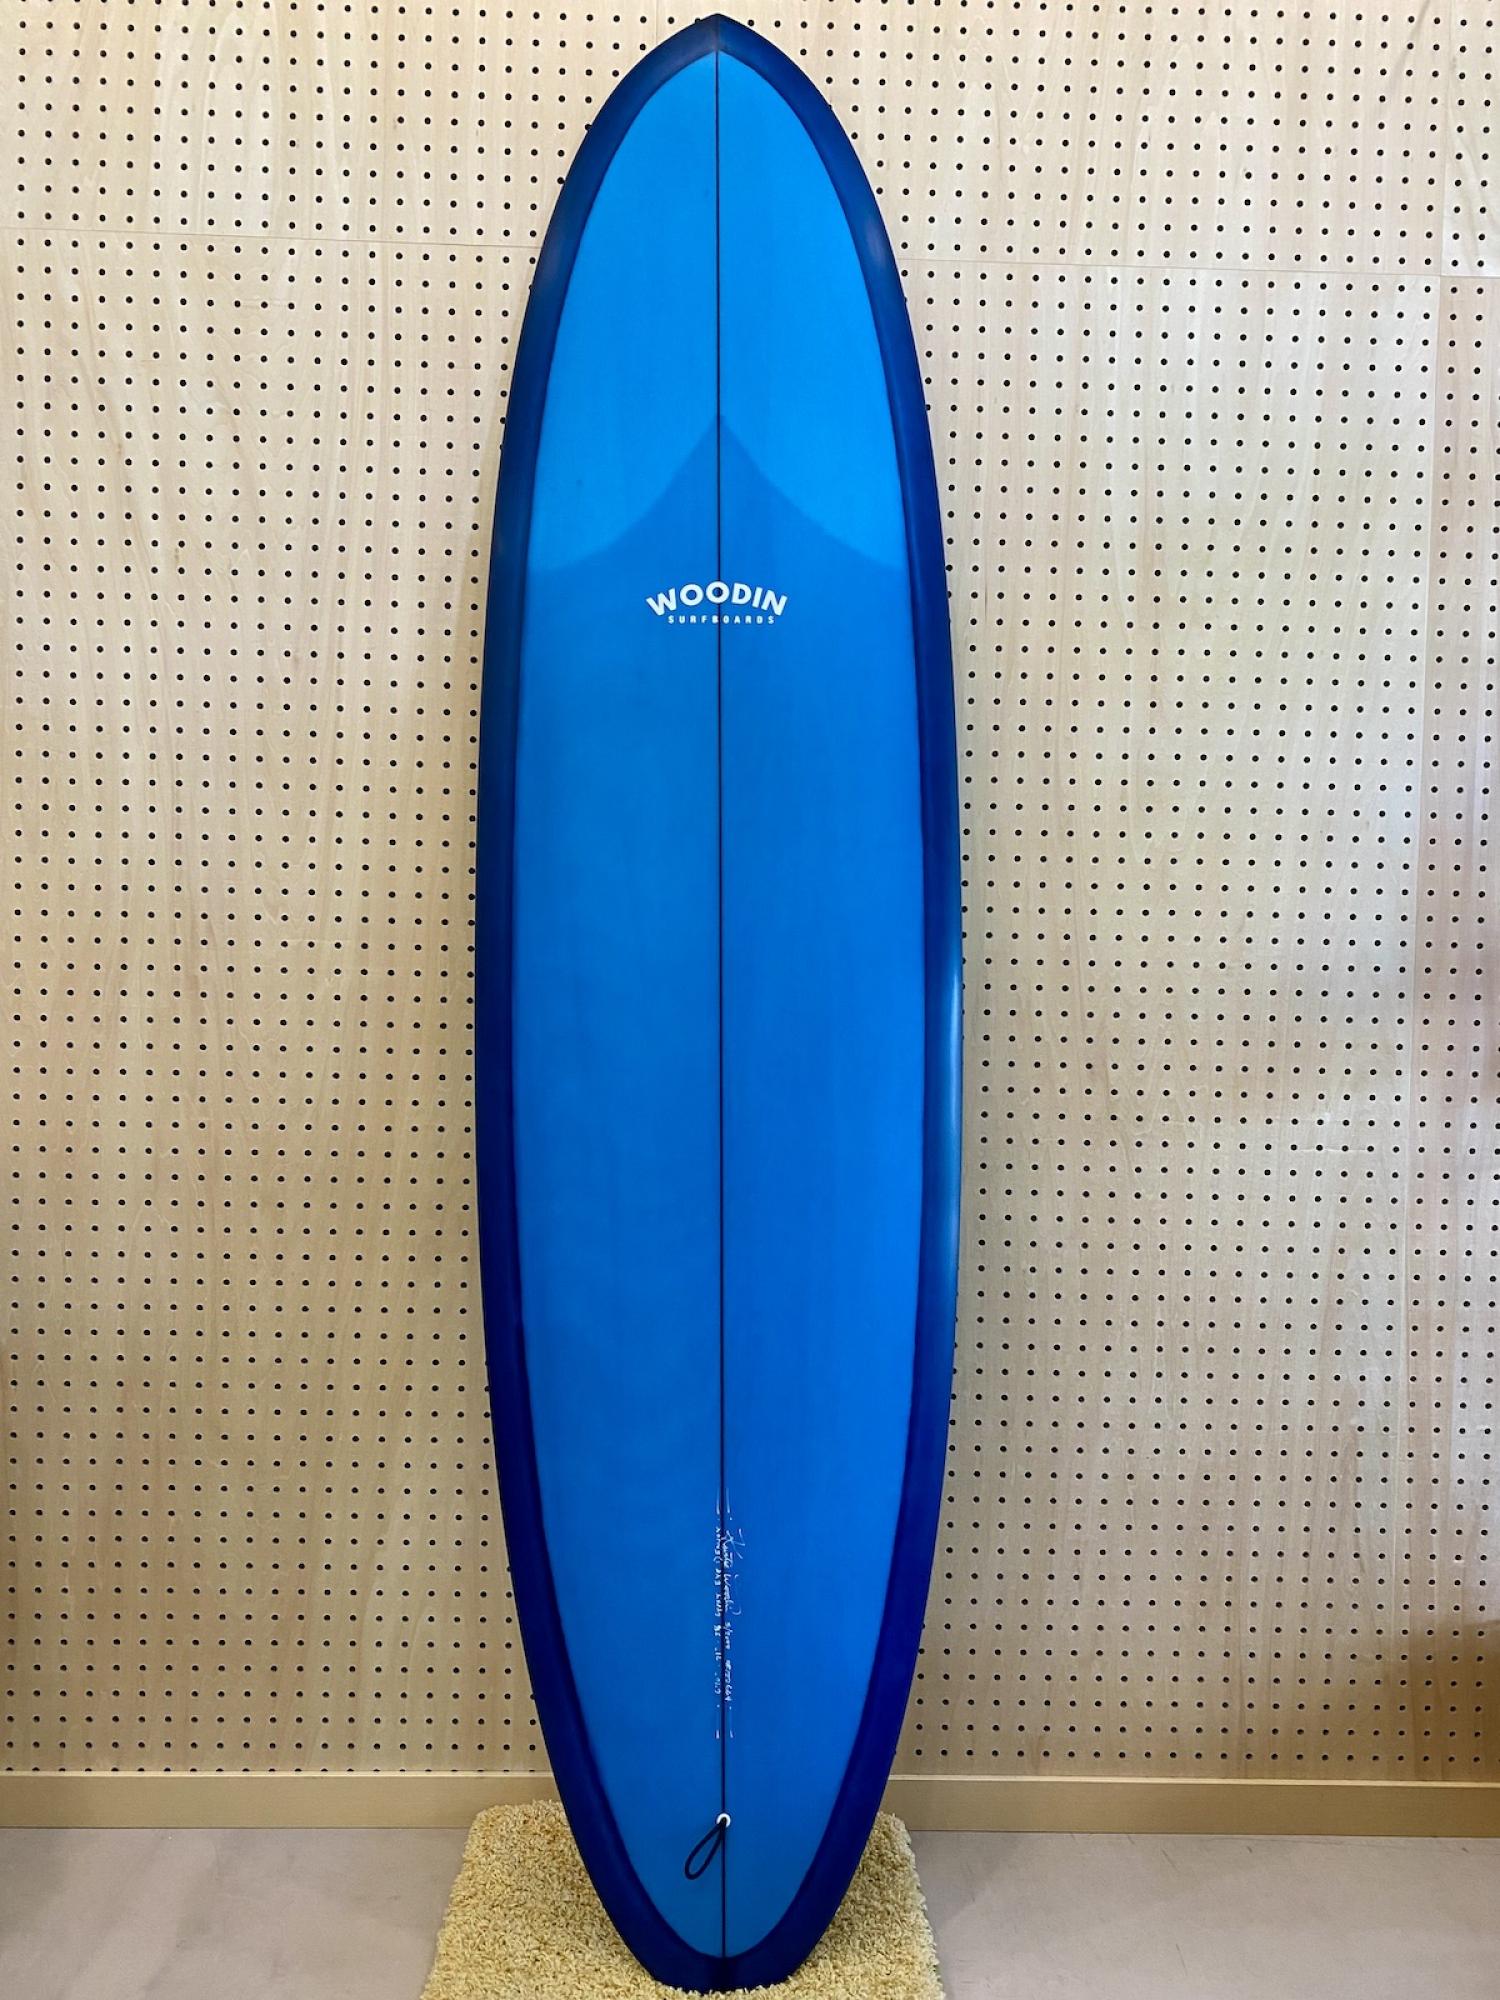 Gypsy Eye model 6.10 WOODIN SURFBOARDS